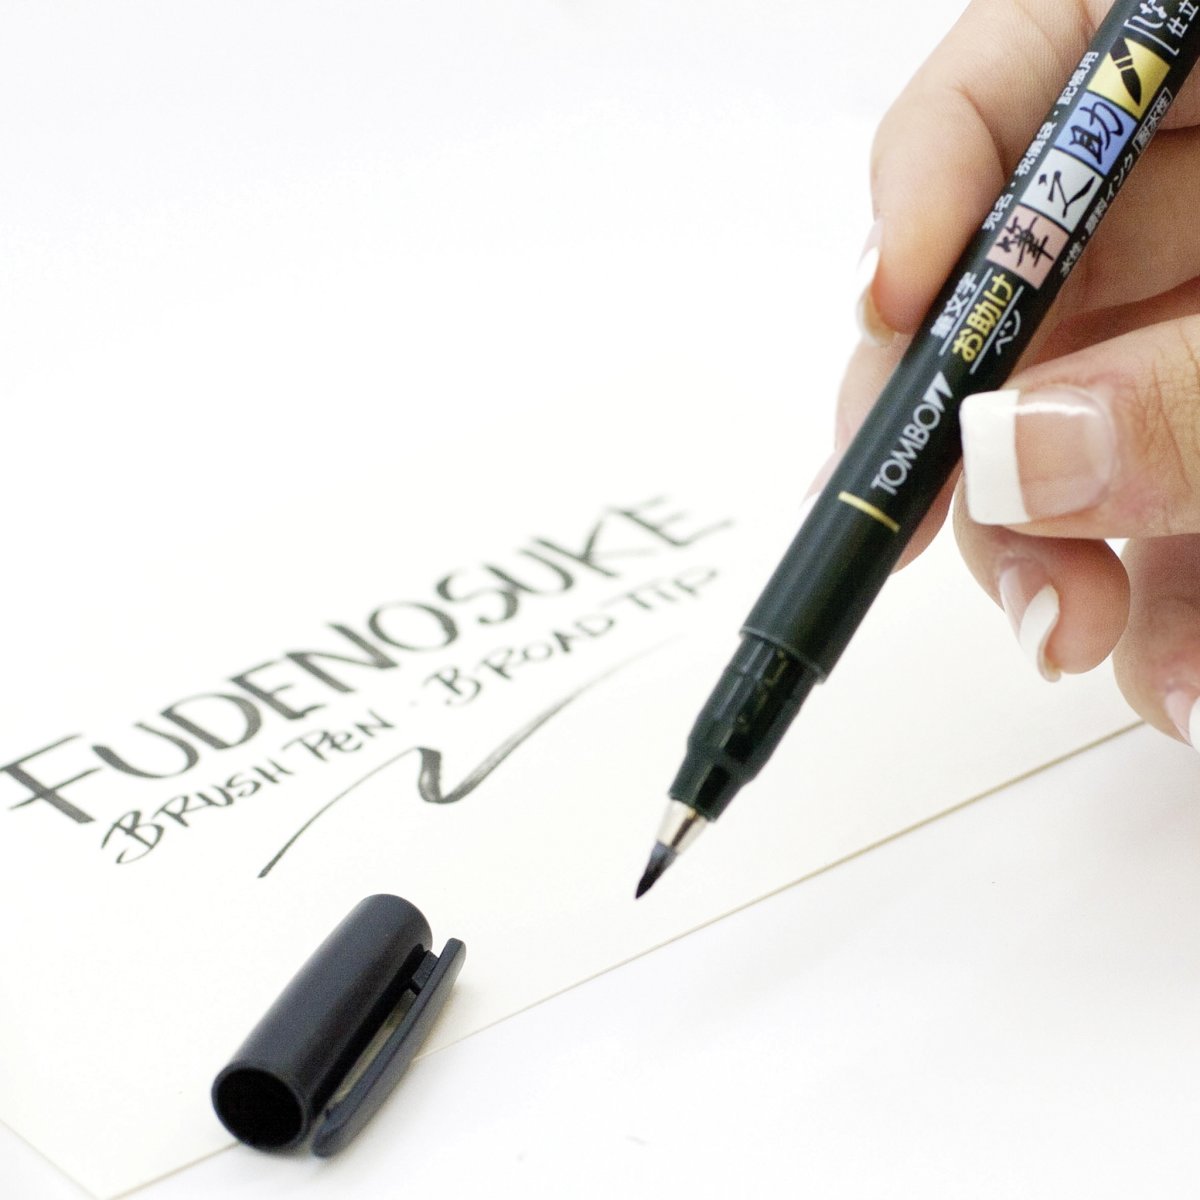 Tombow Fudenosuke Pensel pen | Blød | Sort